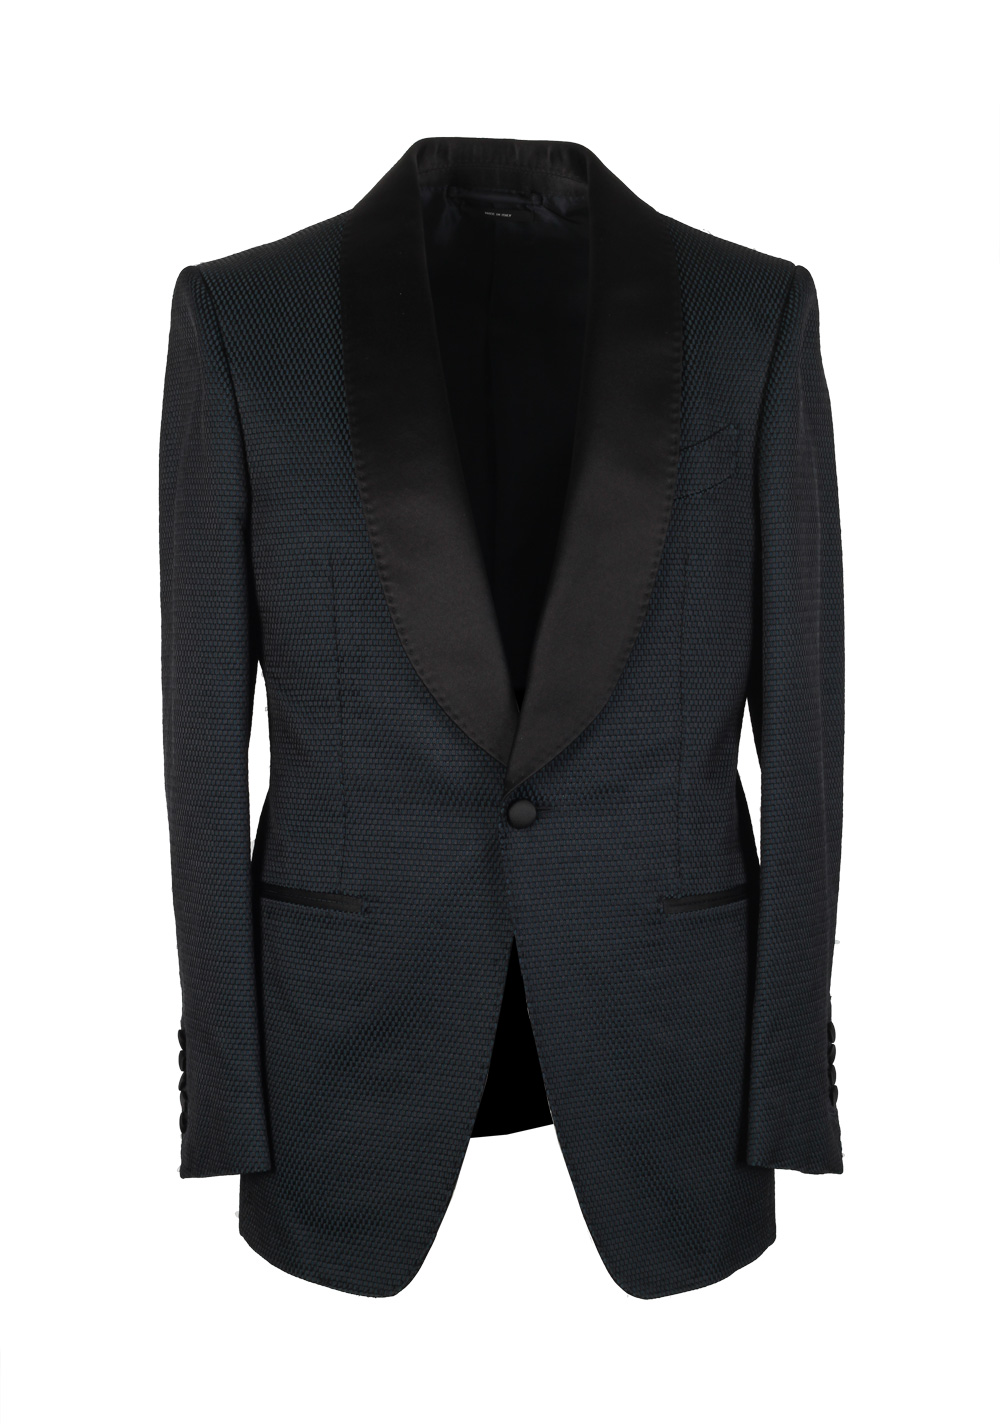 TOM FORD Shelton Green Black Sport Coat Tuxedo Dinner Jacket Size 46 ...